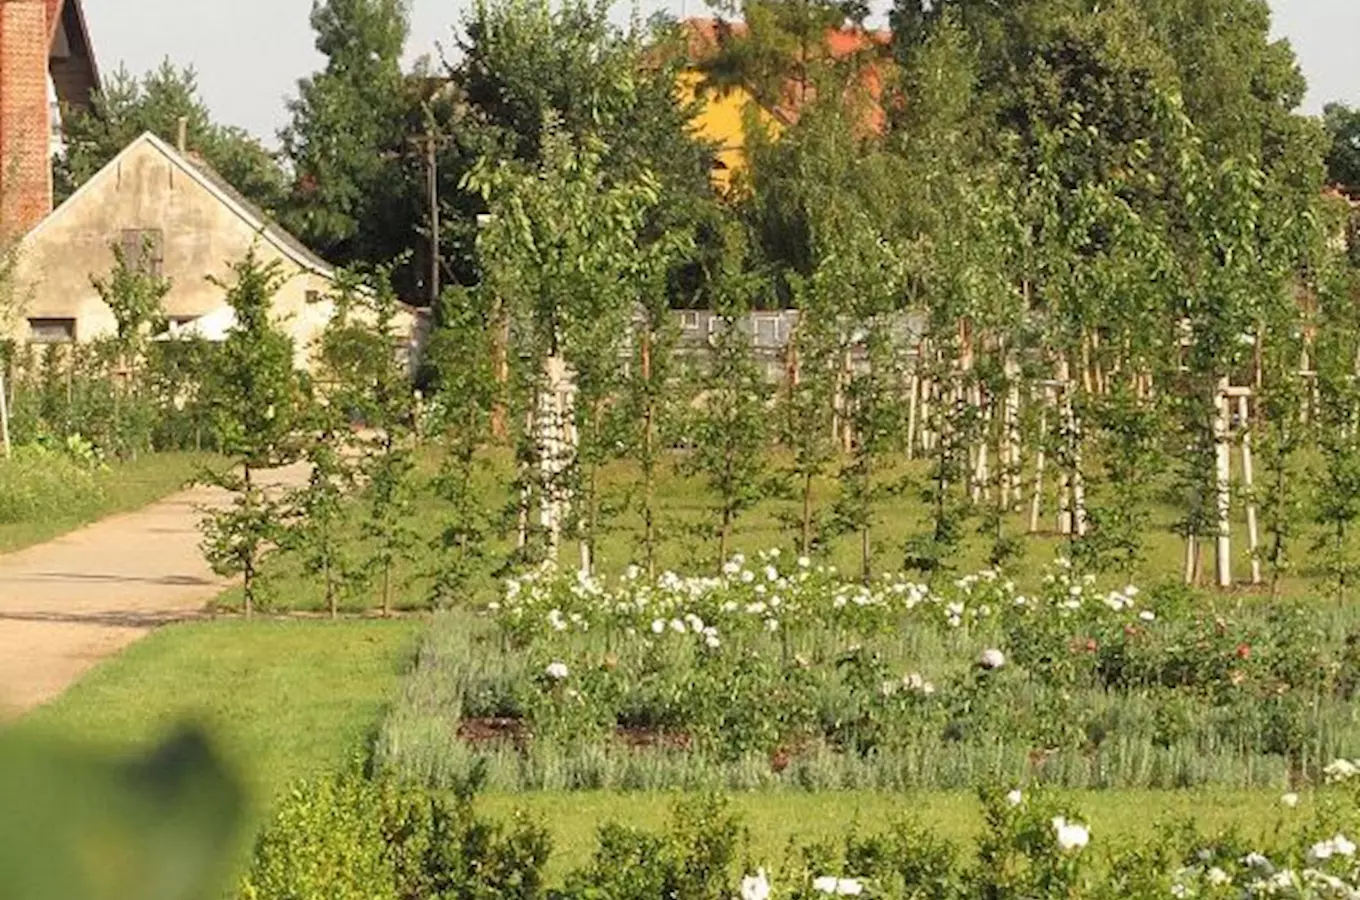 Zahradnictví na zámku v Miloticích bylo otevřeno veřejnosti